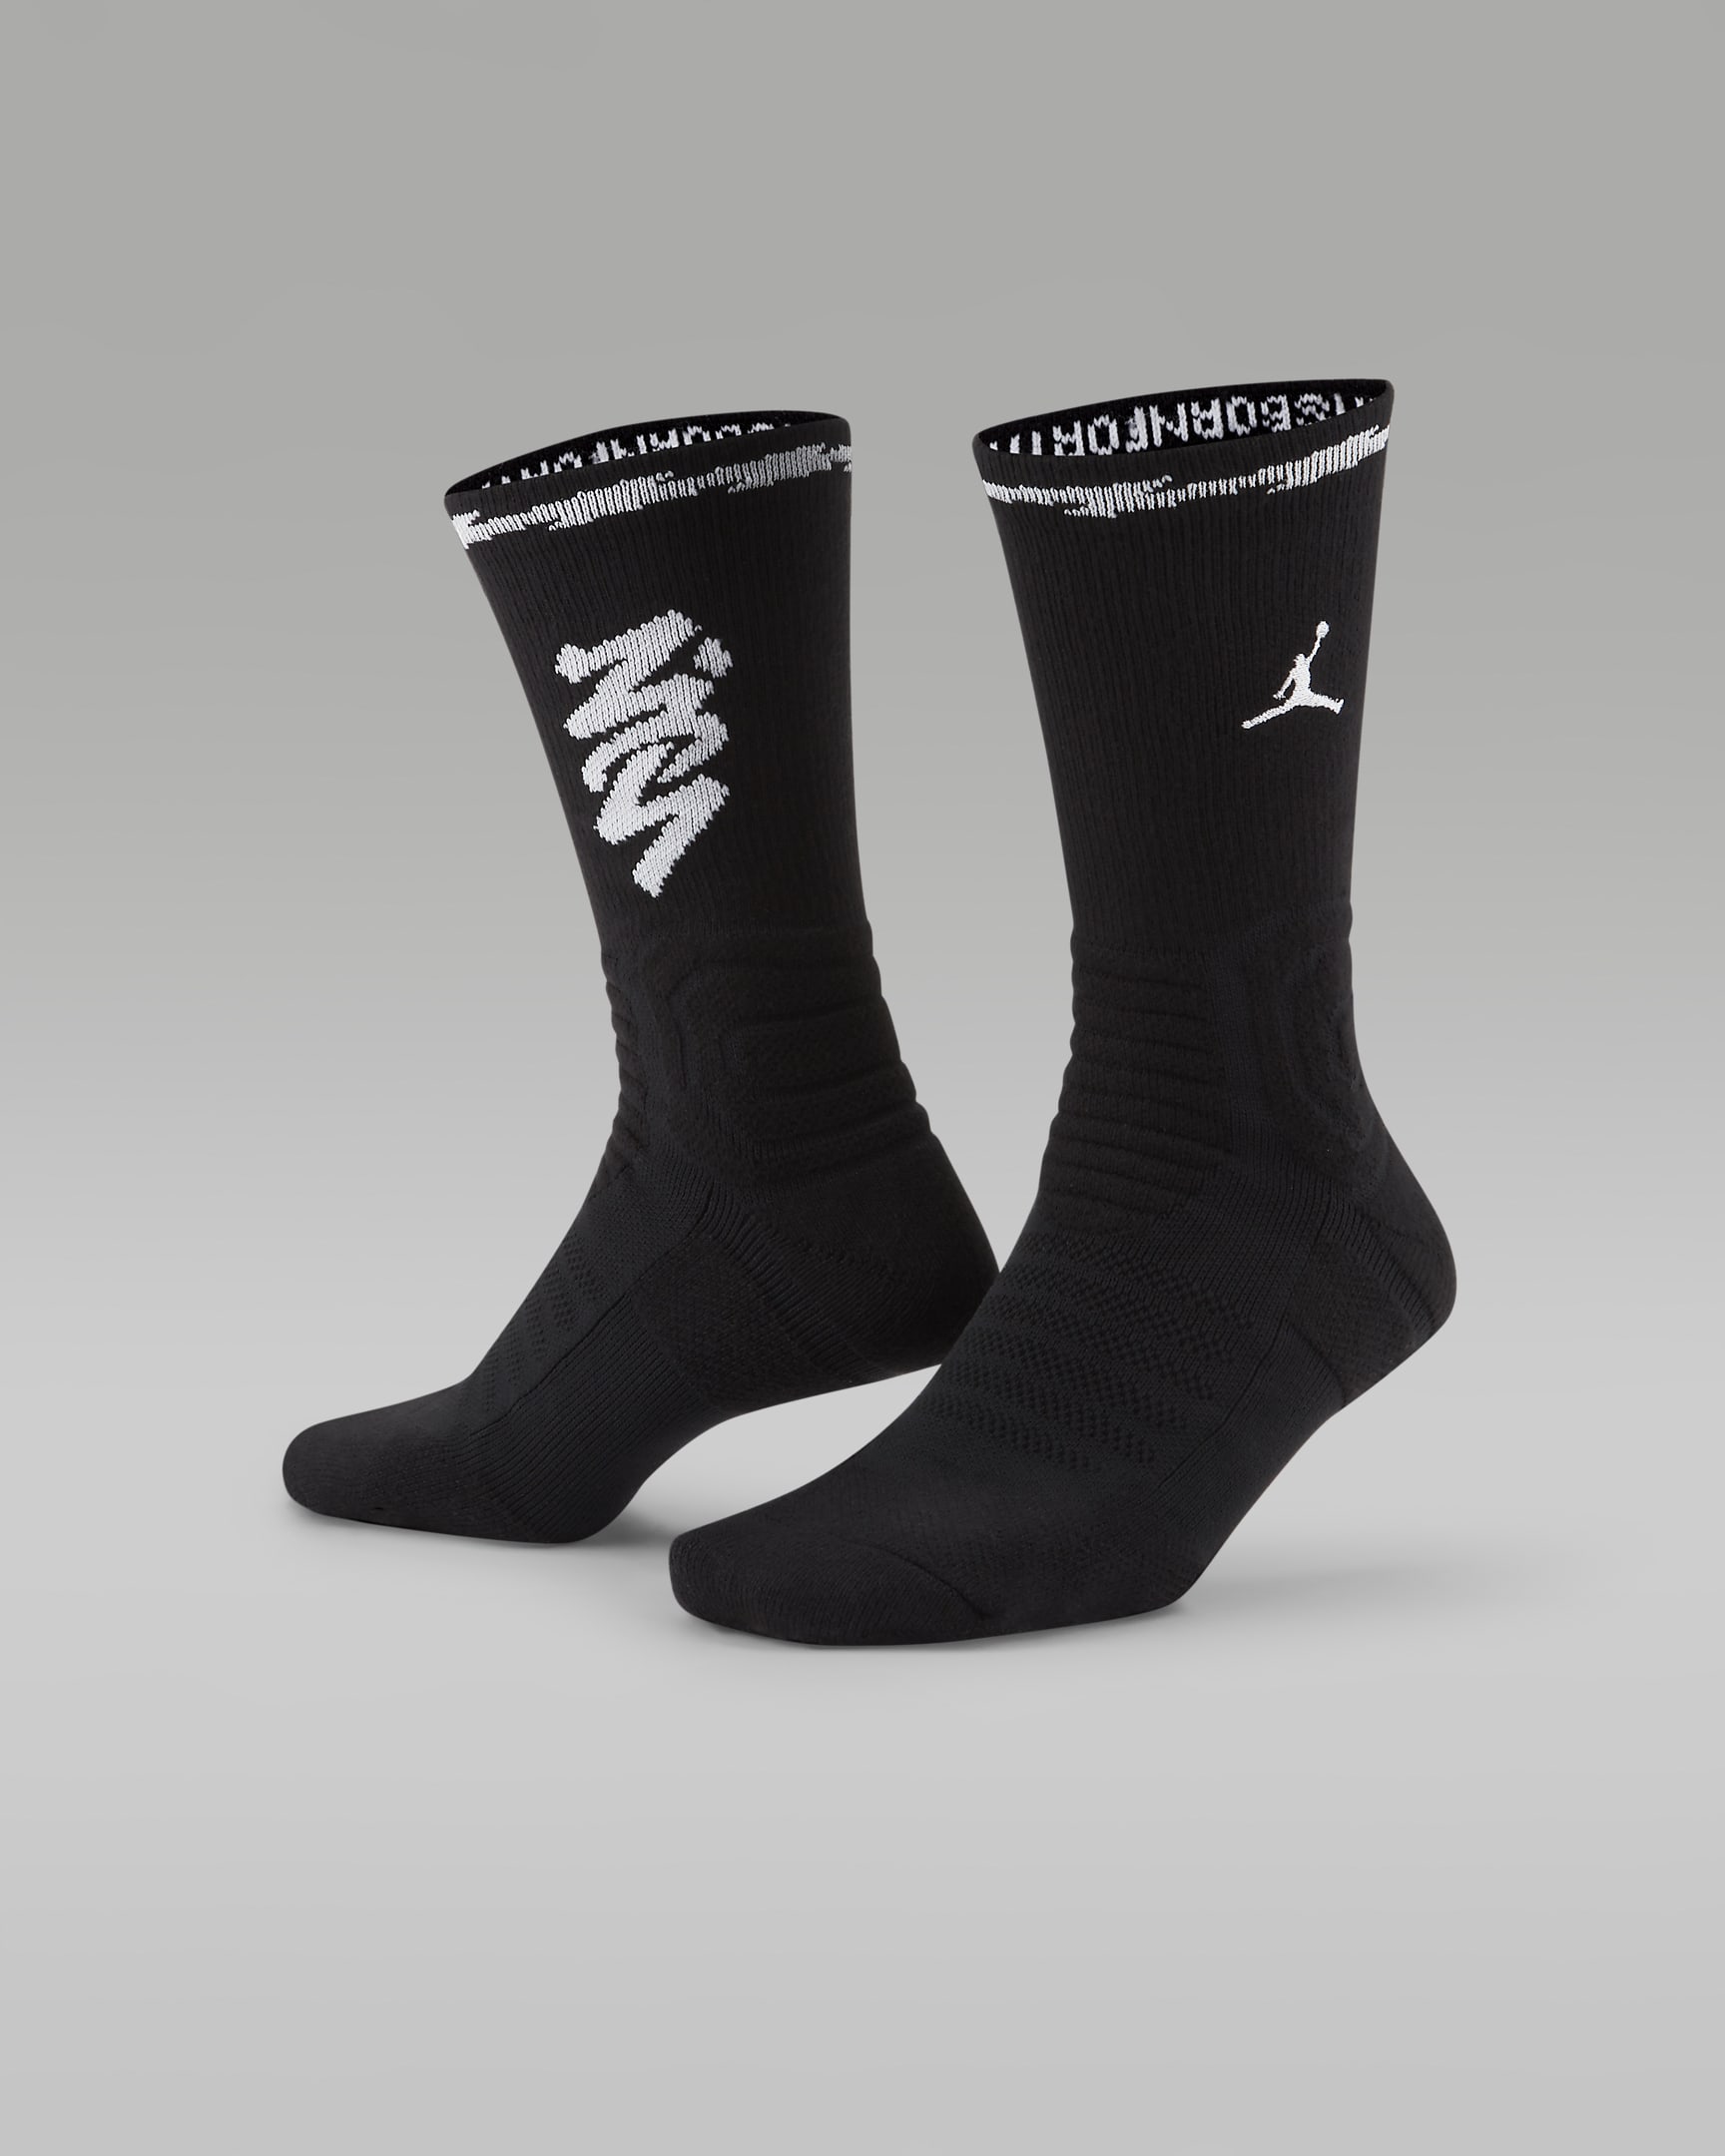 Zion Flight Crew Socks. Nike IL